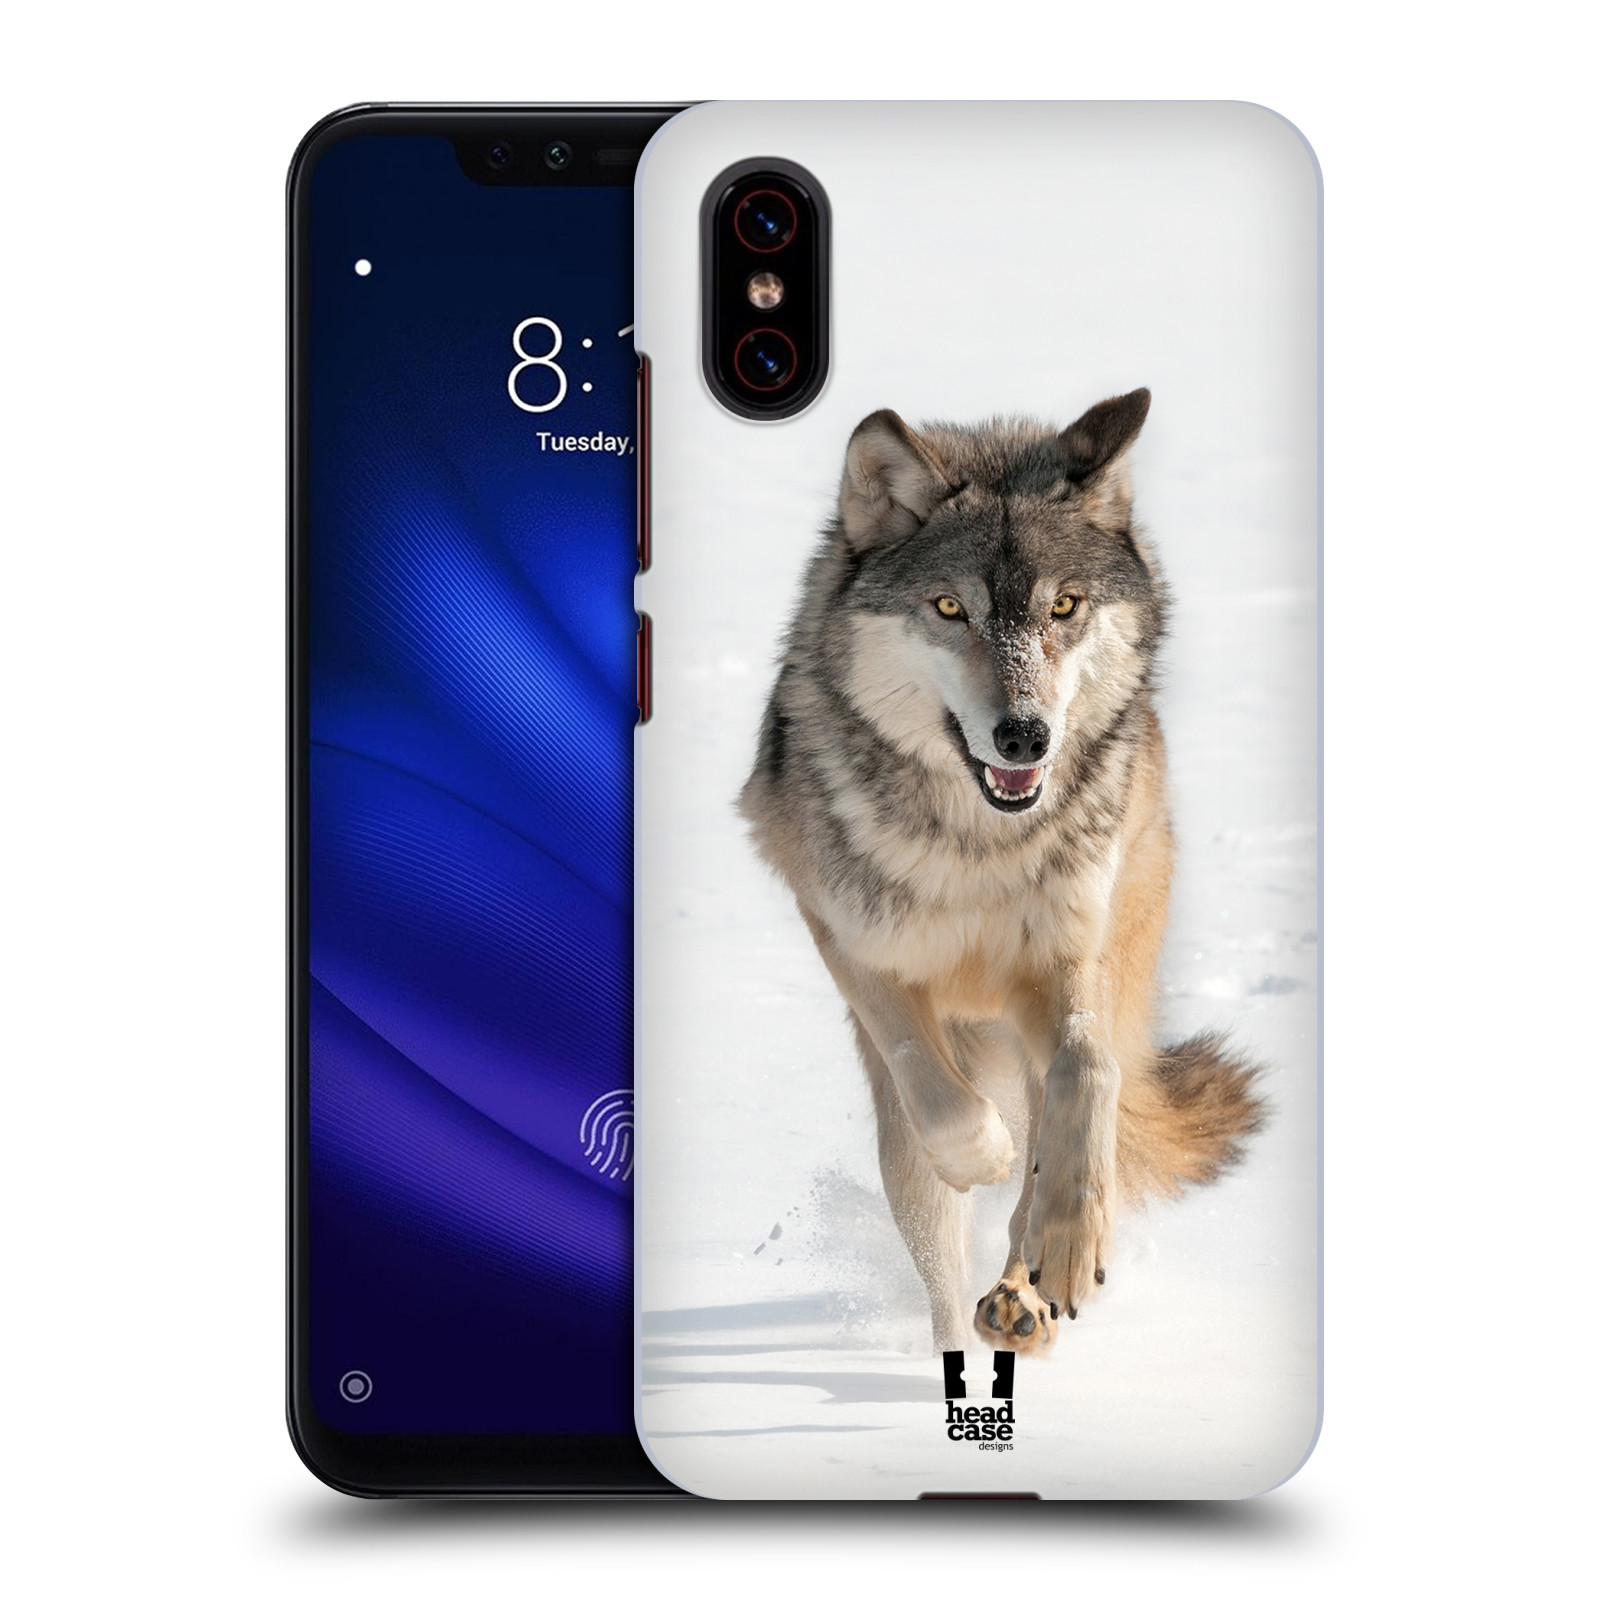 Zadní obal pro mobil Xiaomi Mi 8 PRO - HEAD CASE - Svět zvířat divoký vlk